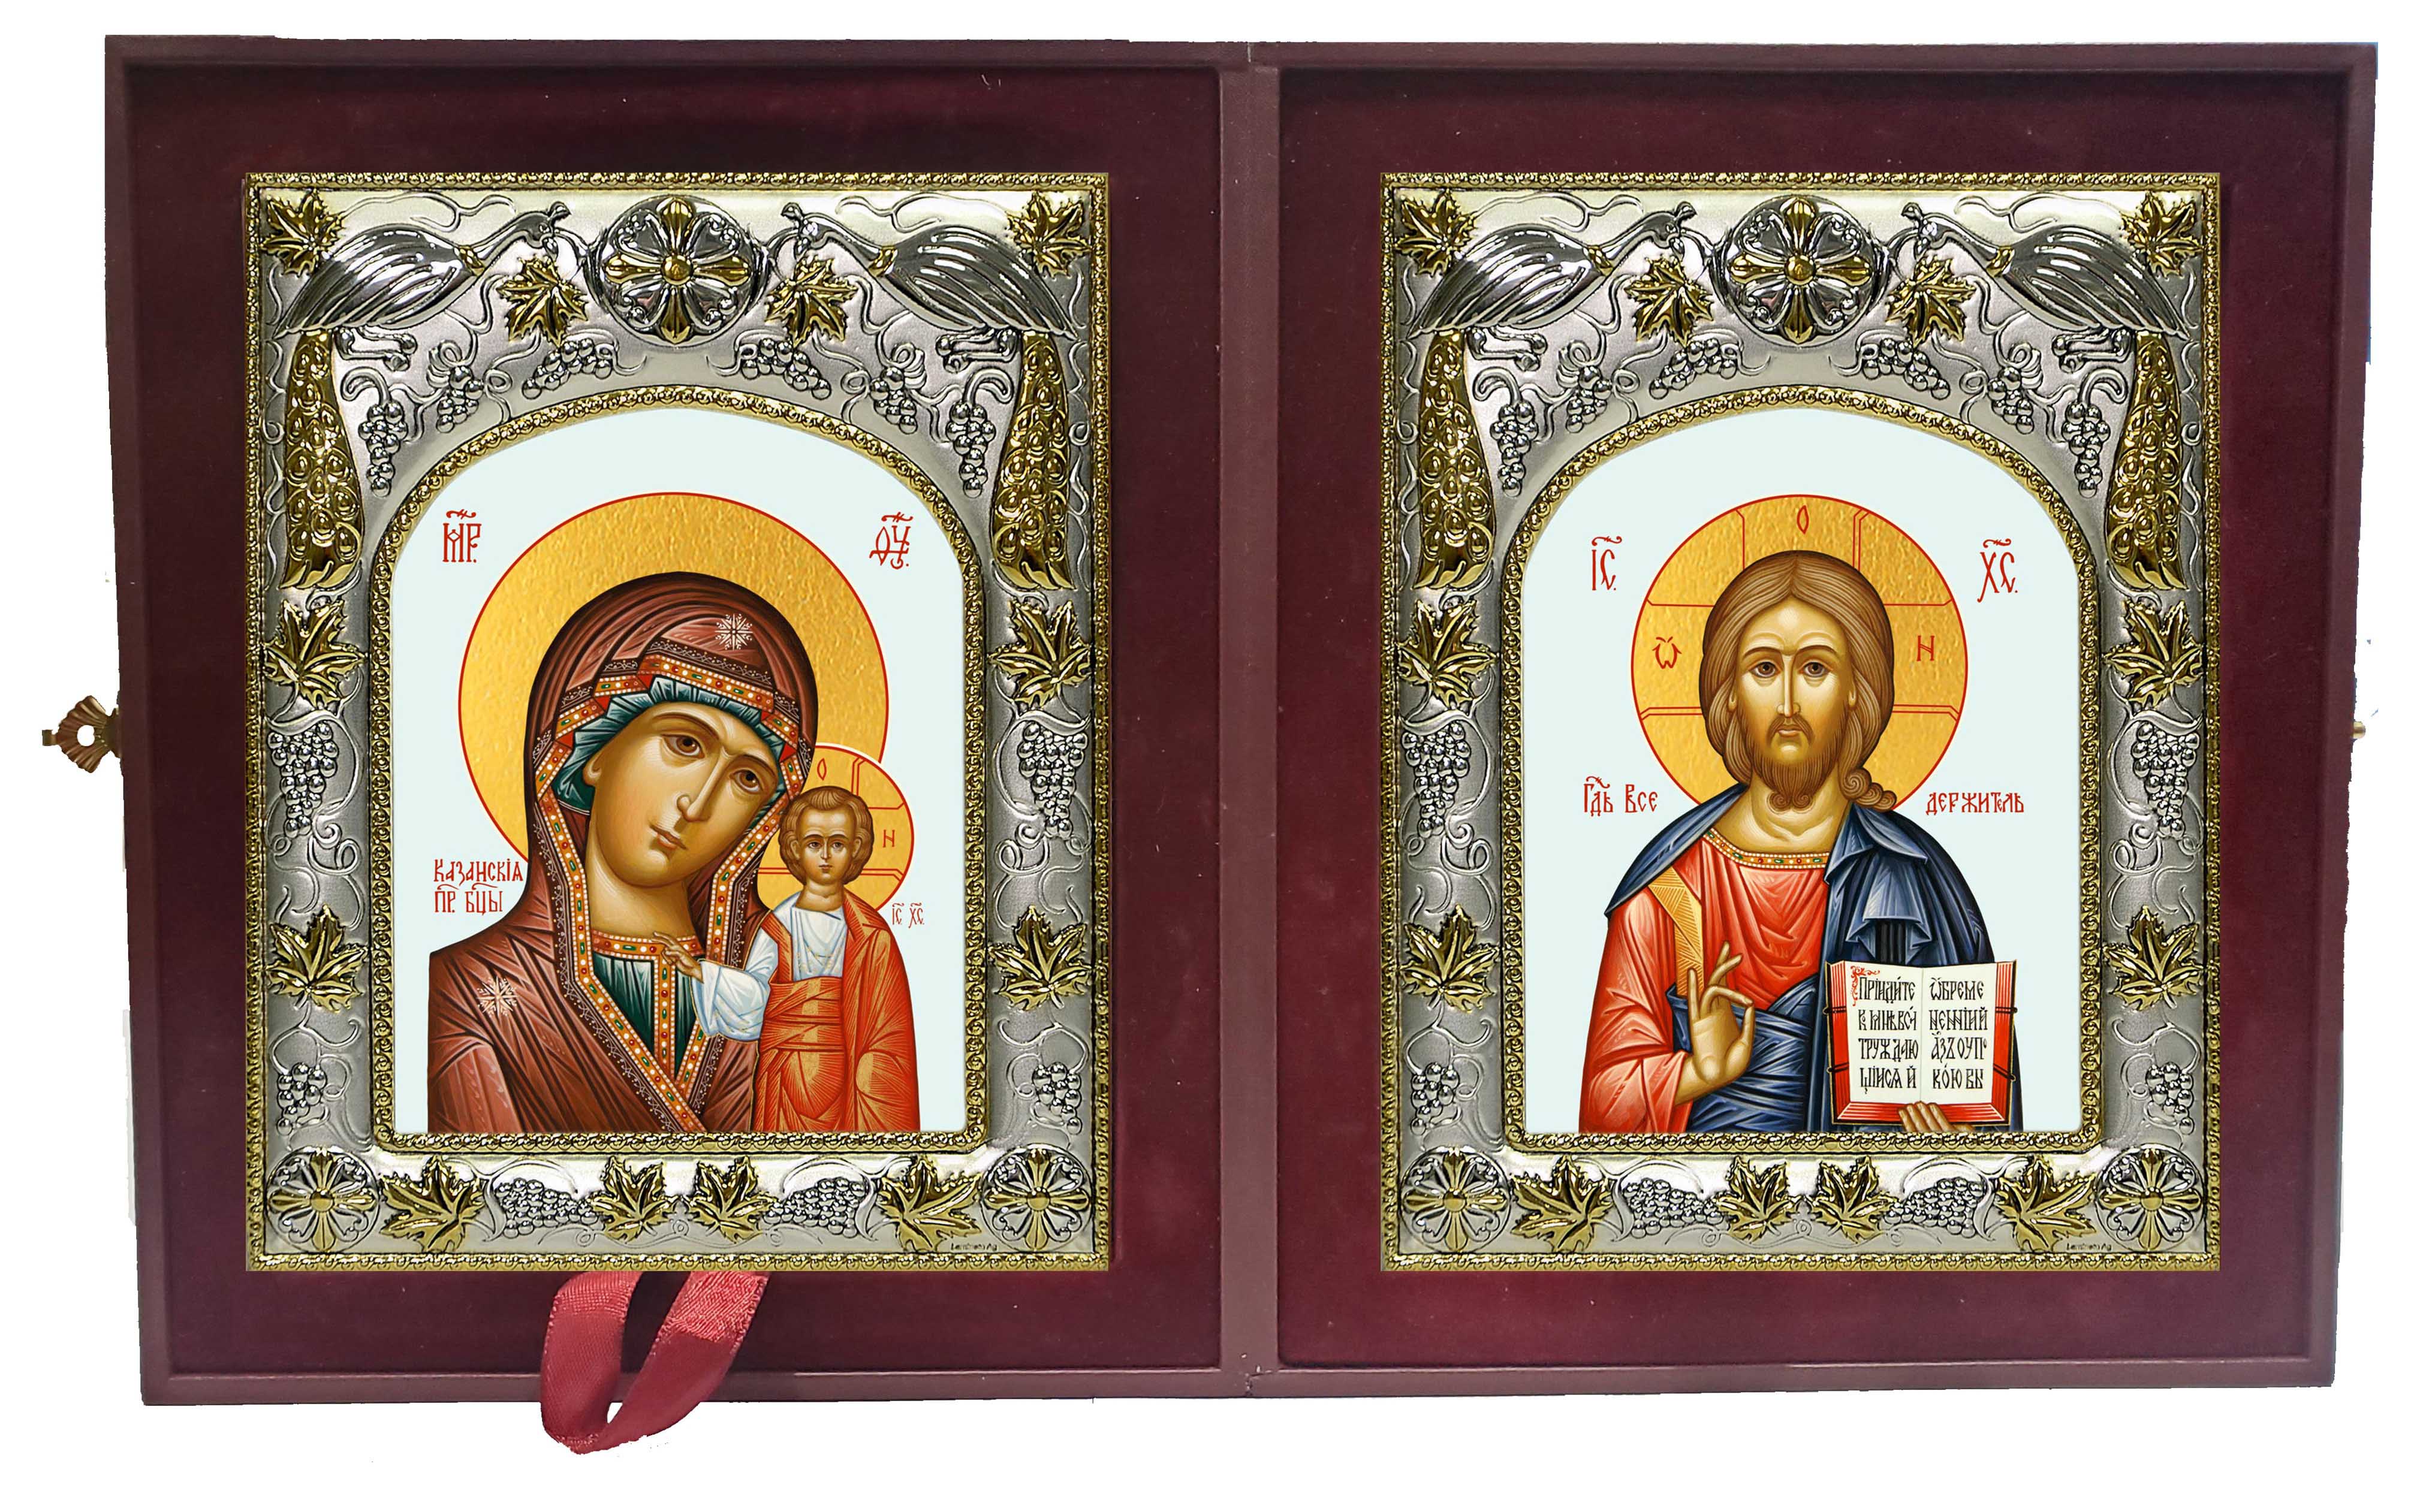 Купить икону в складне В православном интернет магазине